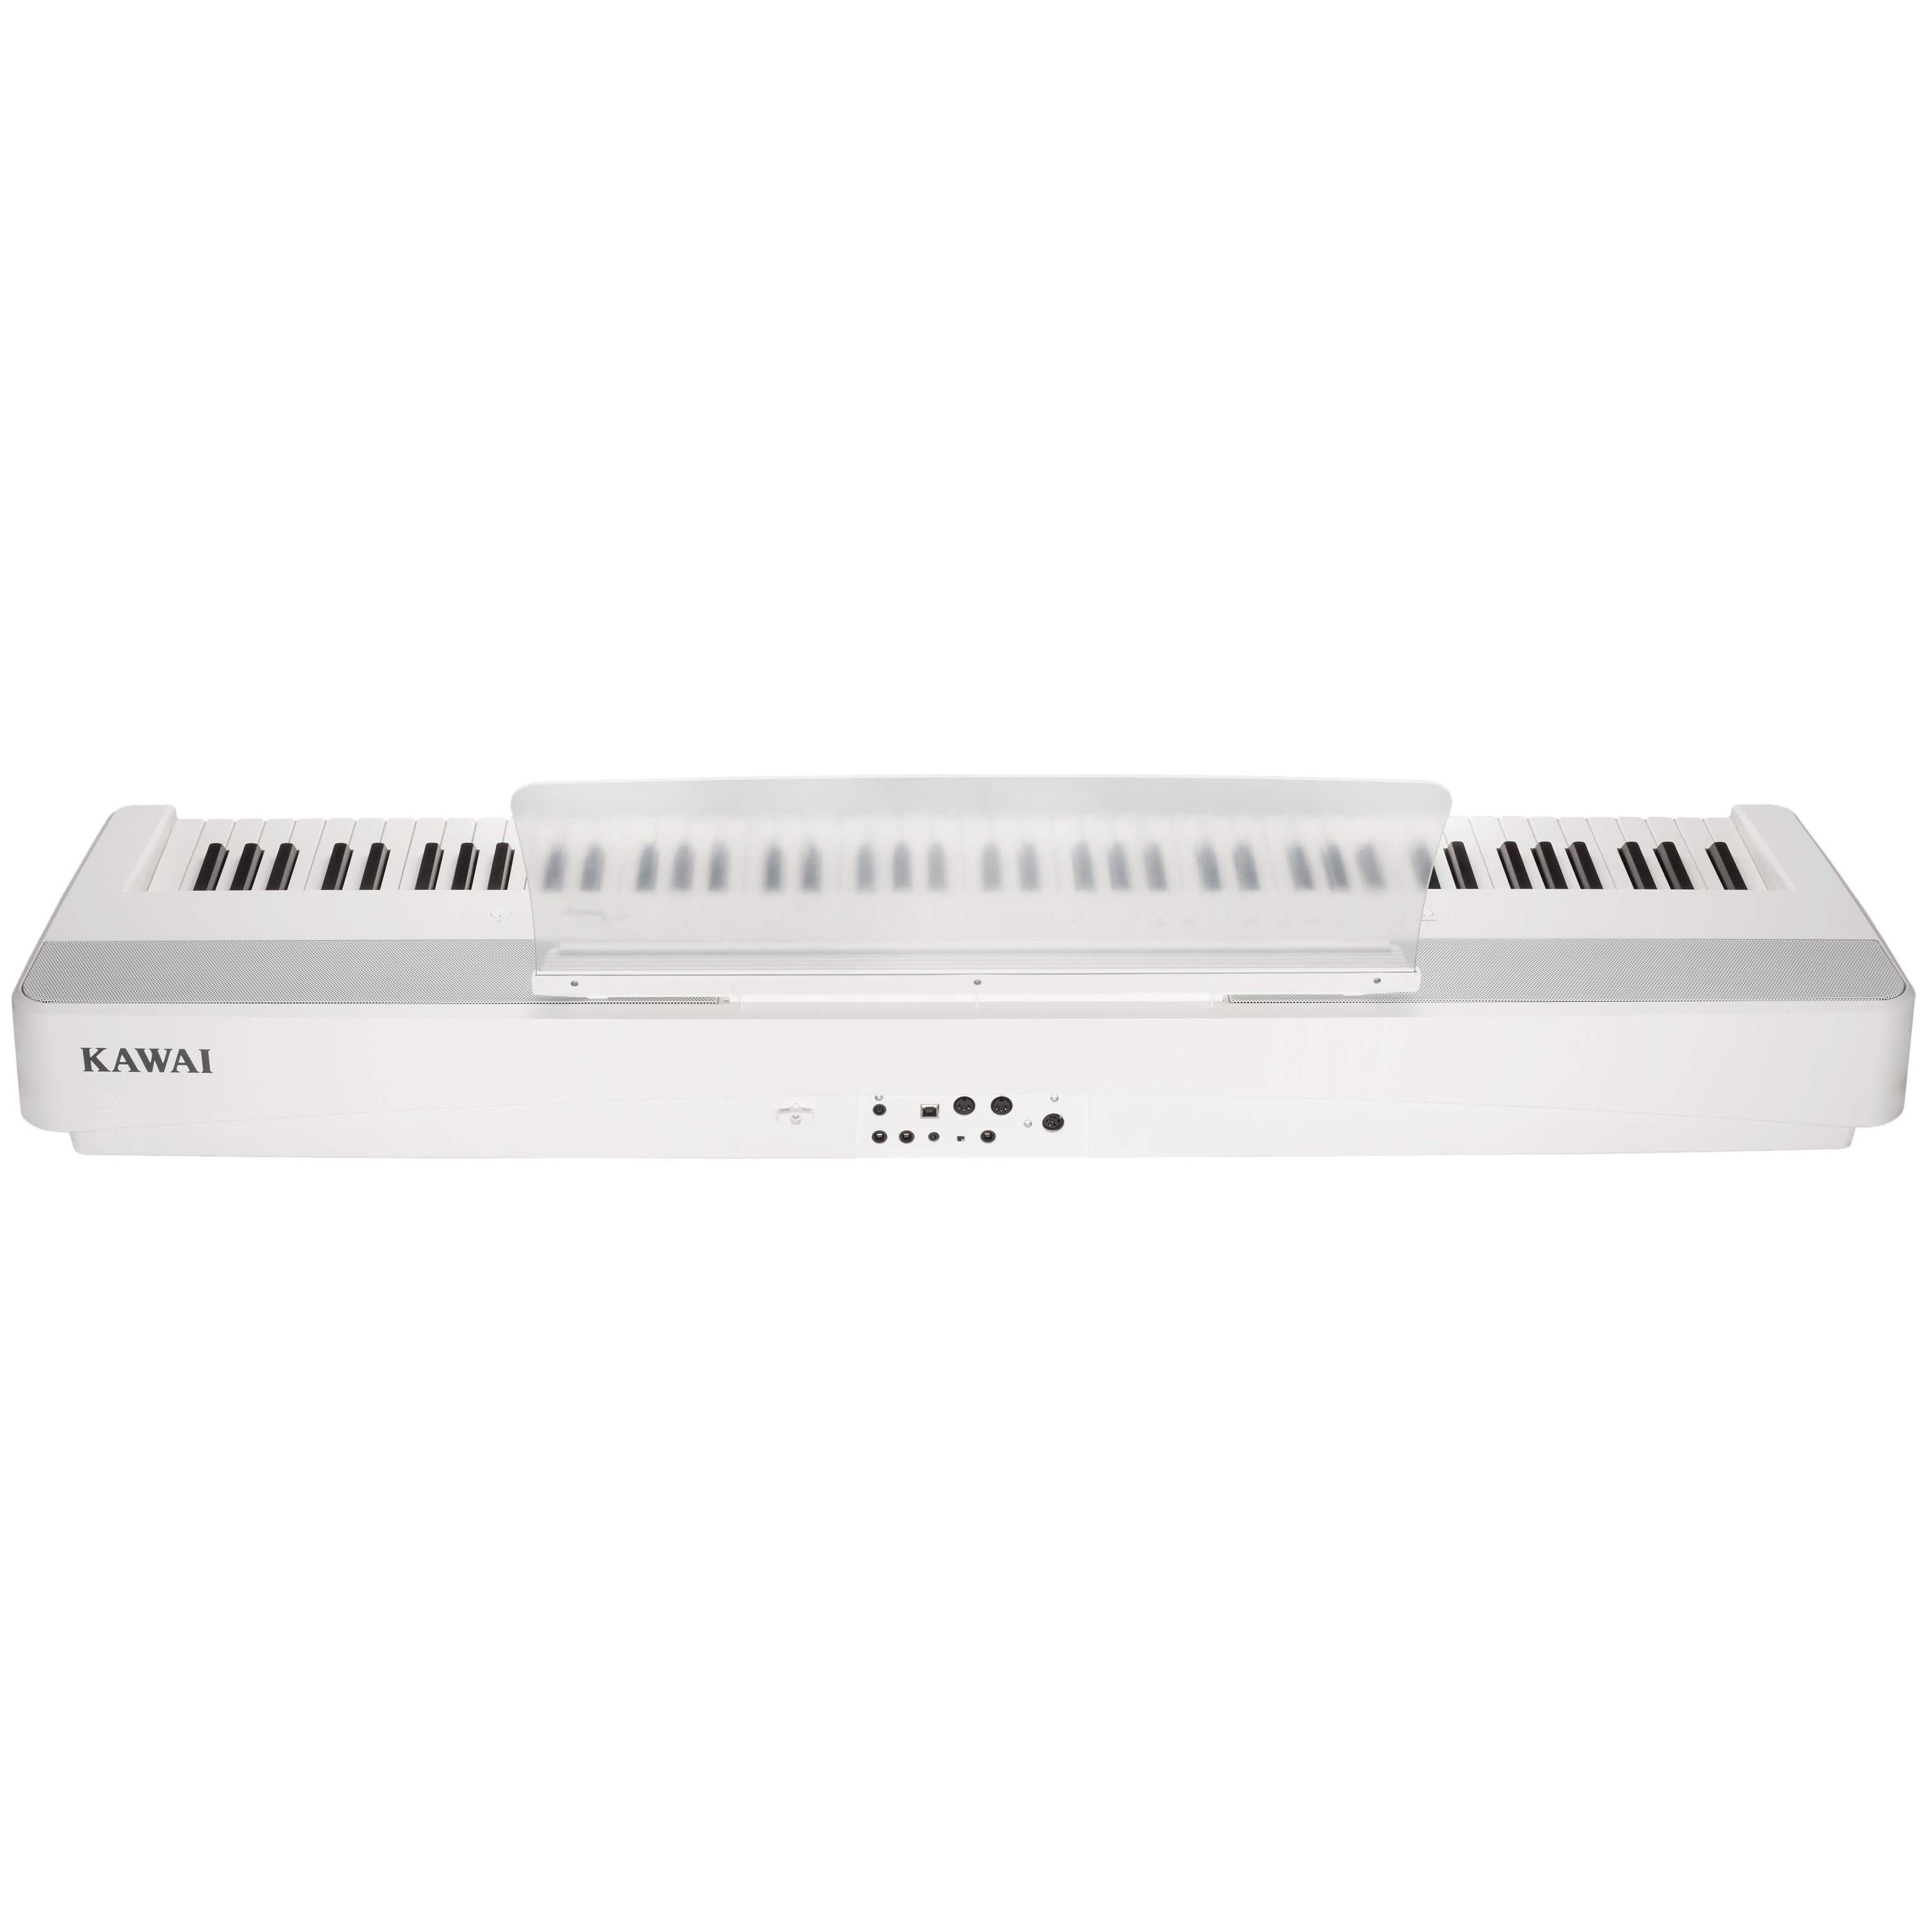 KAWAI ES520 W - цифровое пианино, механика RH III, 34 тембра, 2*20 Вт, цвет белый купить в prostore.me